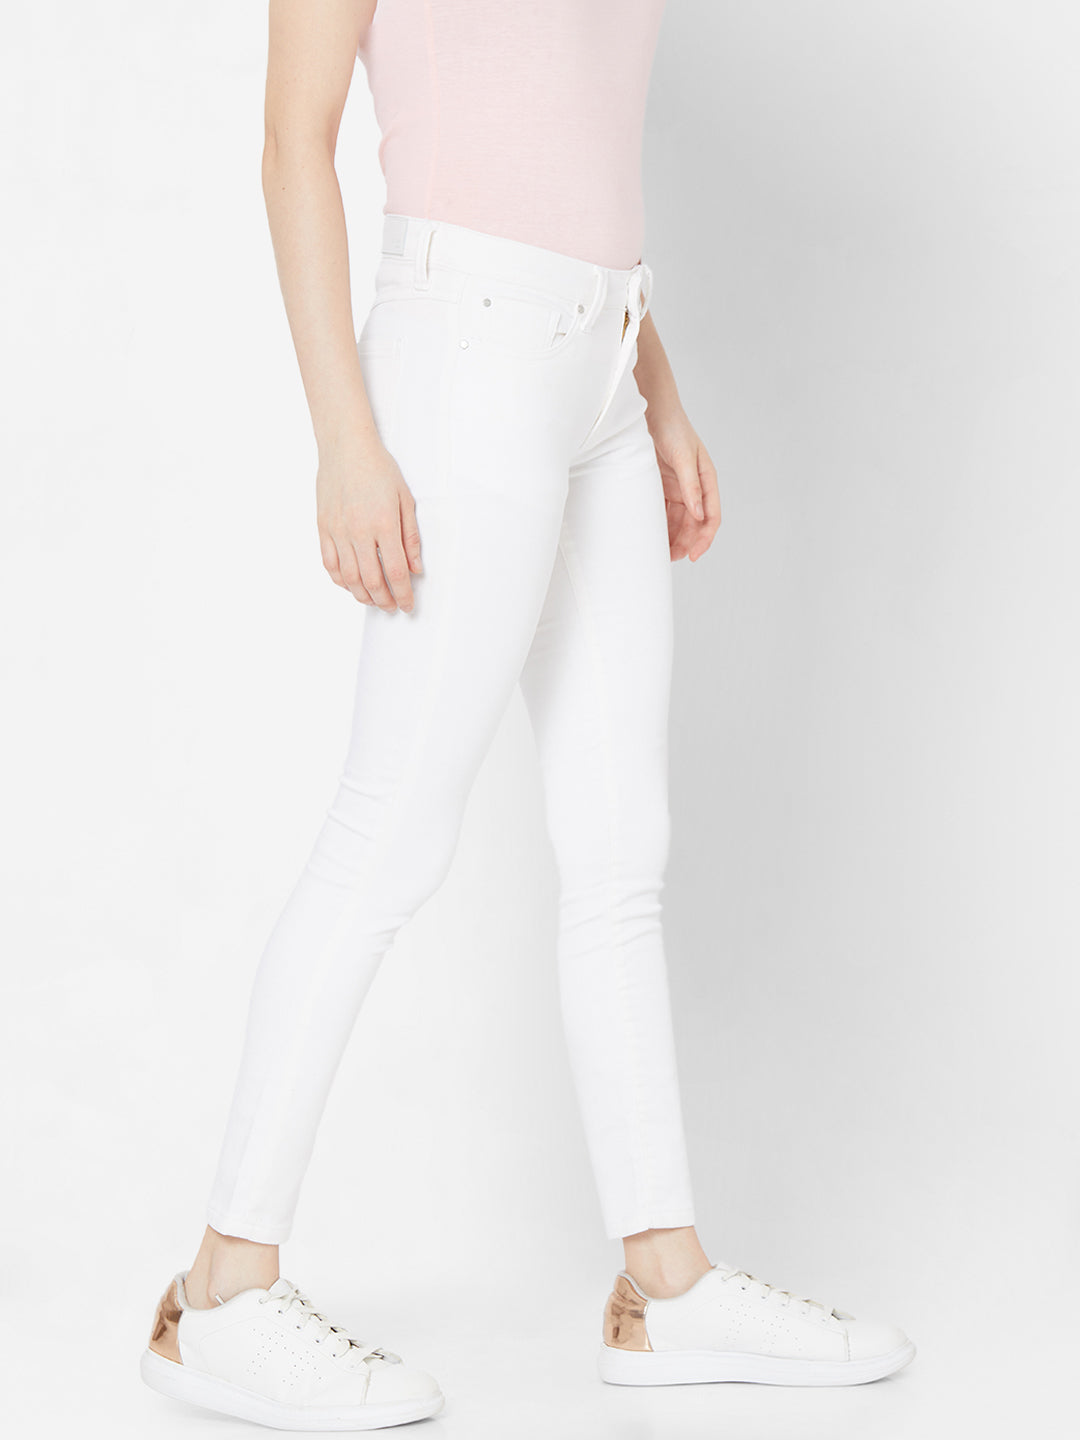 Spykar White Lycra Super Skinny Regular Length Jeans For Women (Alicia)